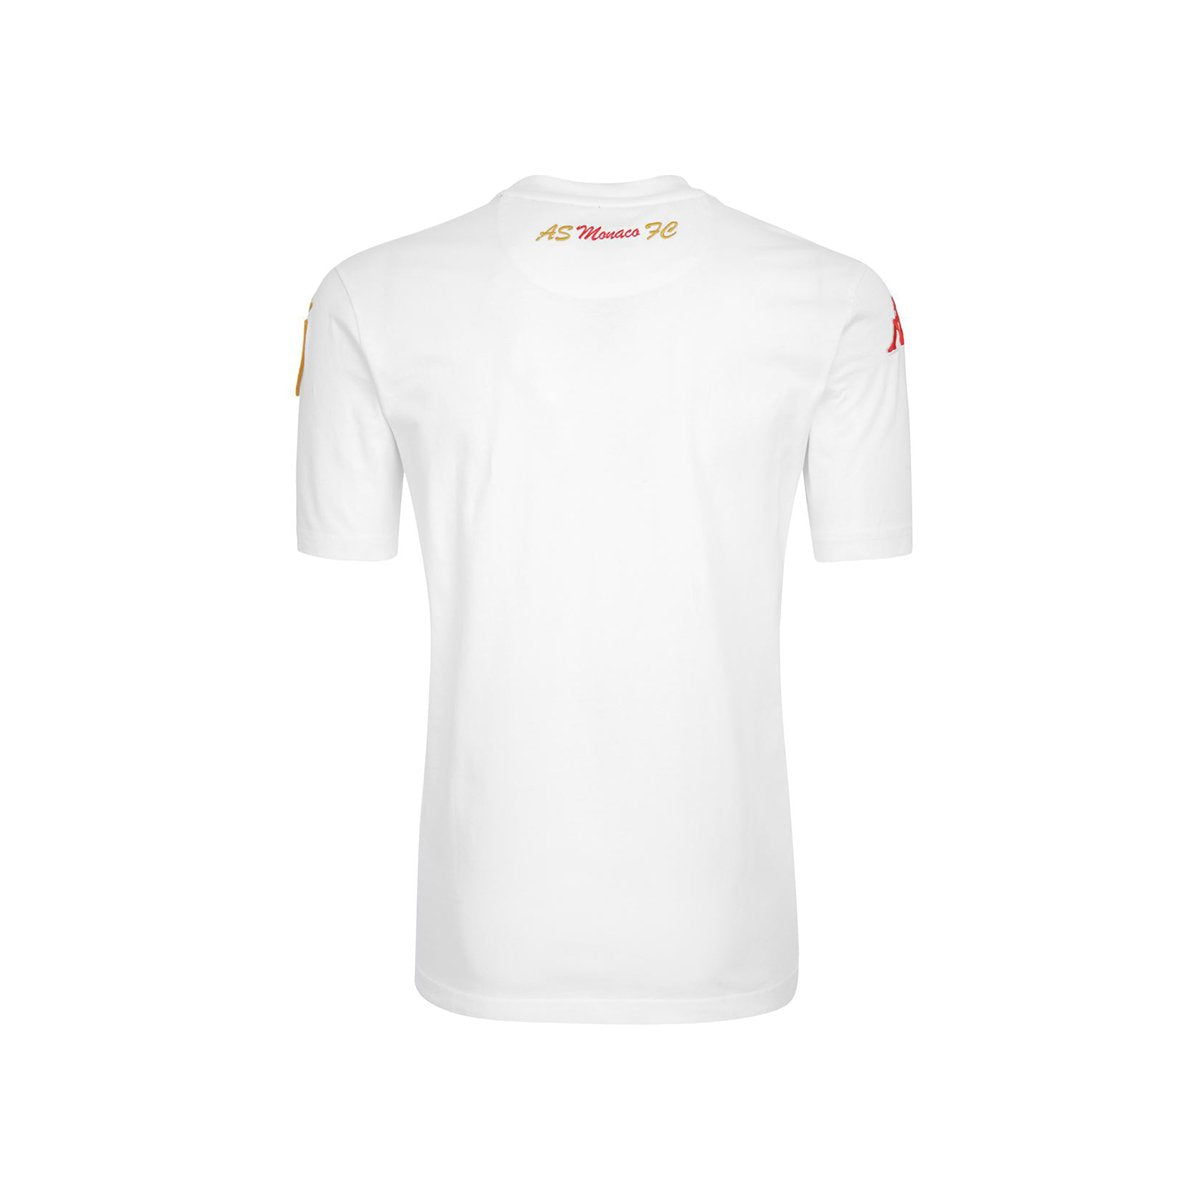 Camiseta Eroi Tee As Monaco Blanco Niños - Imagen 2